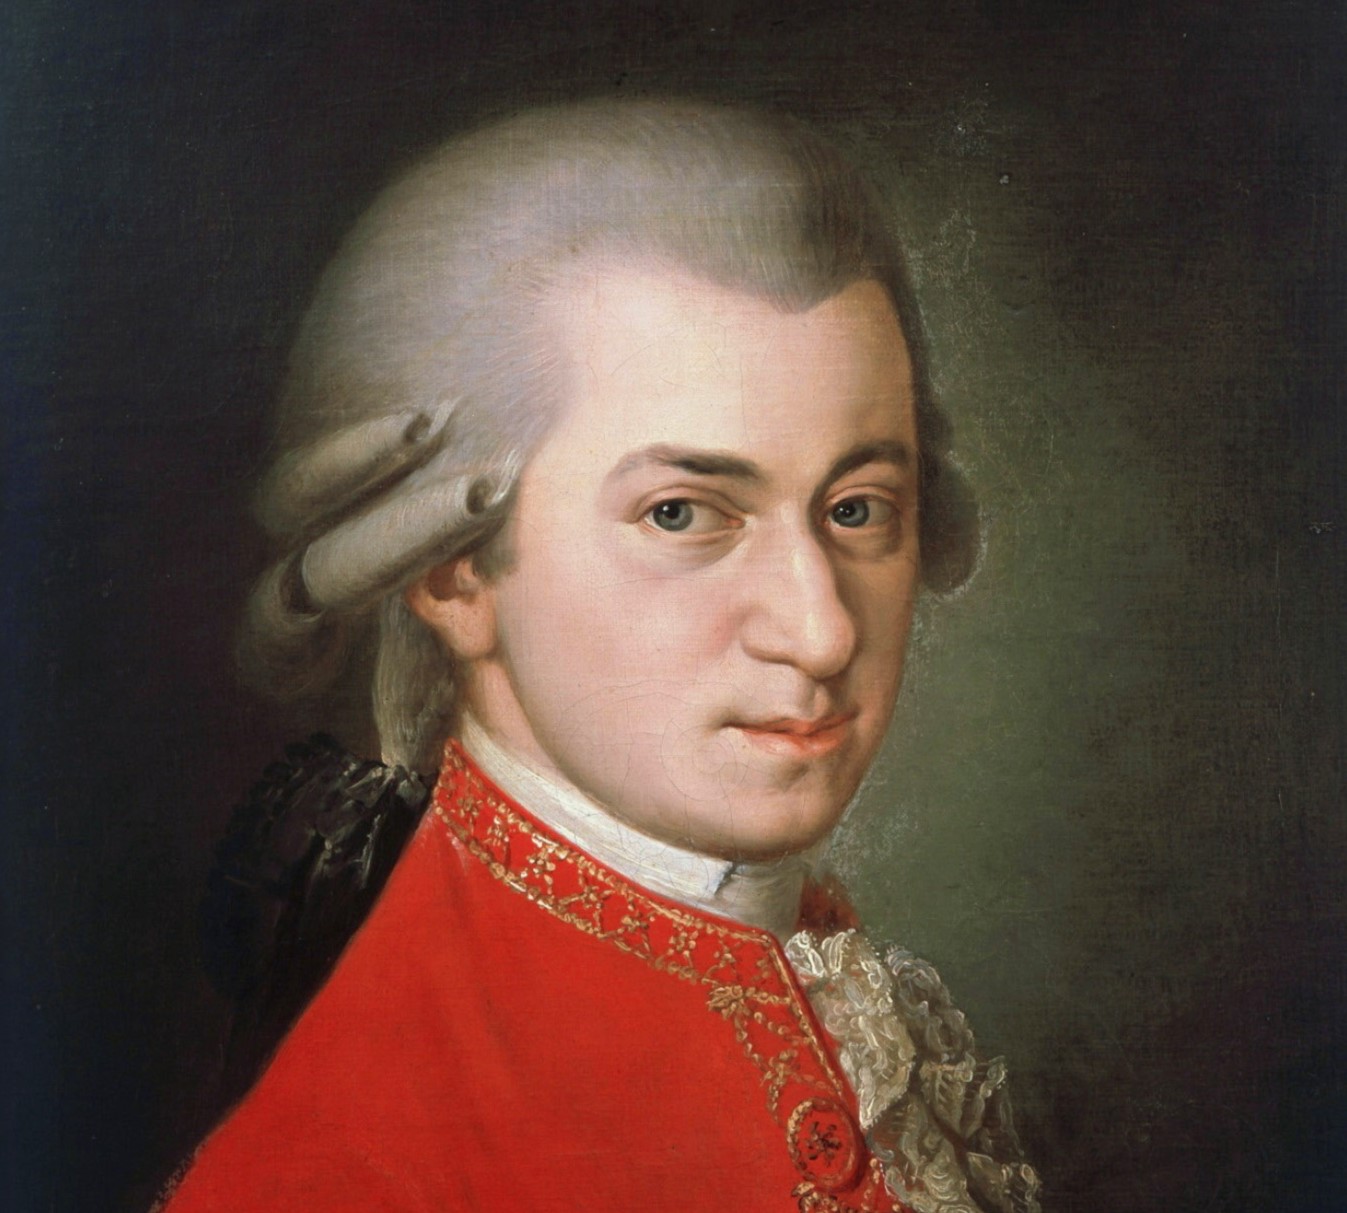 БНТ 2 представя "Сватбата на Фигаро" от Моцарт